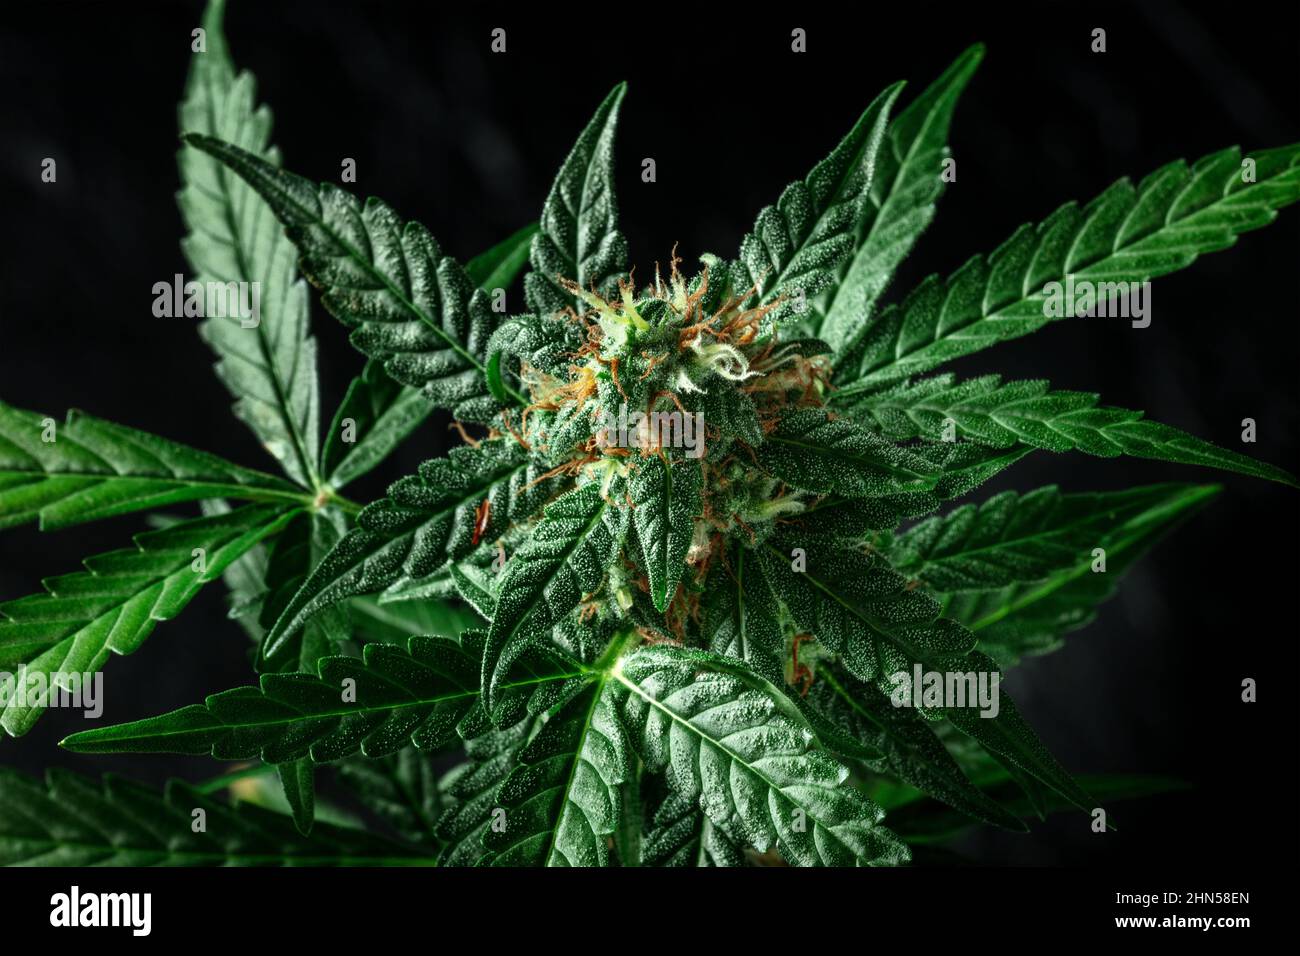 Fiore di pianta di cannabis con stimmi bianchi e gialli su sfondo nero. Coltivazione di marijuana per scopi medicinali Foto Stock